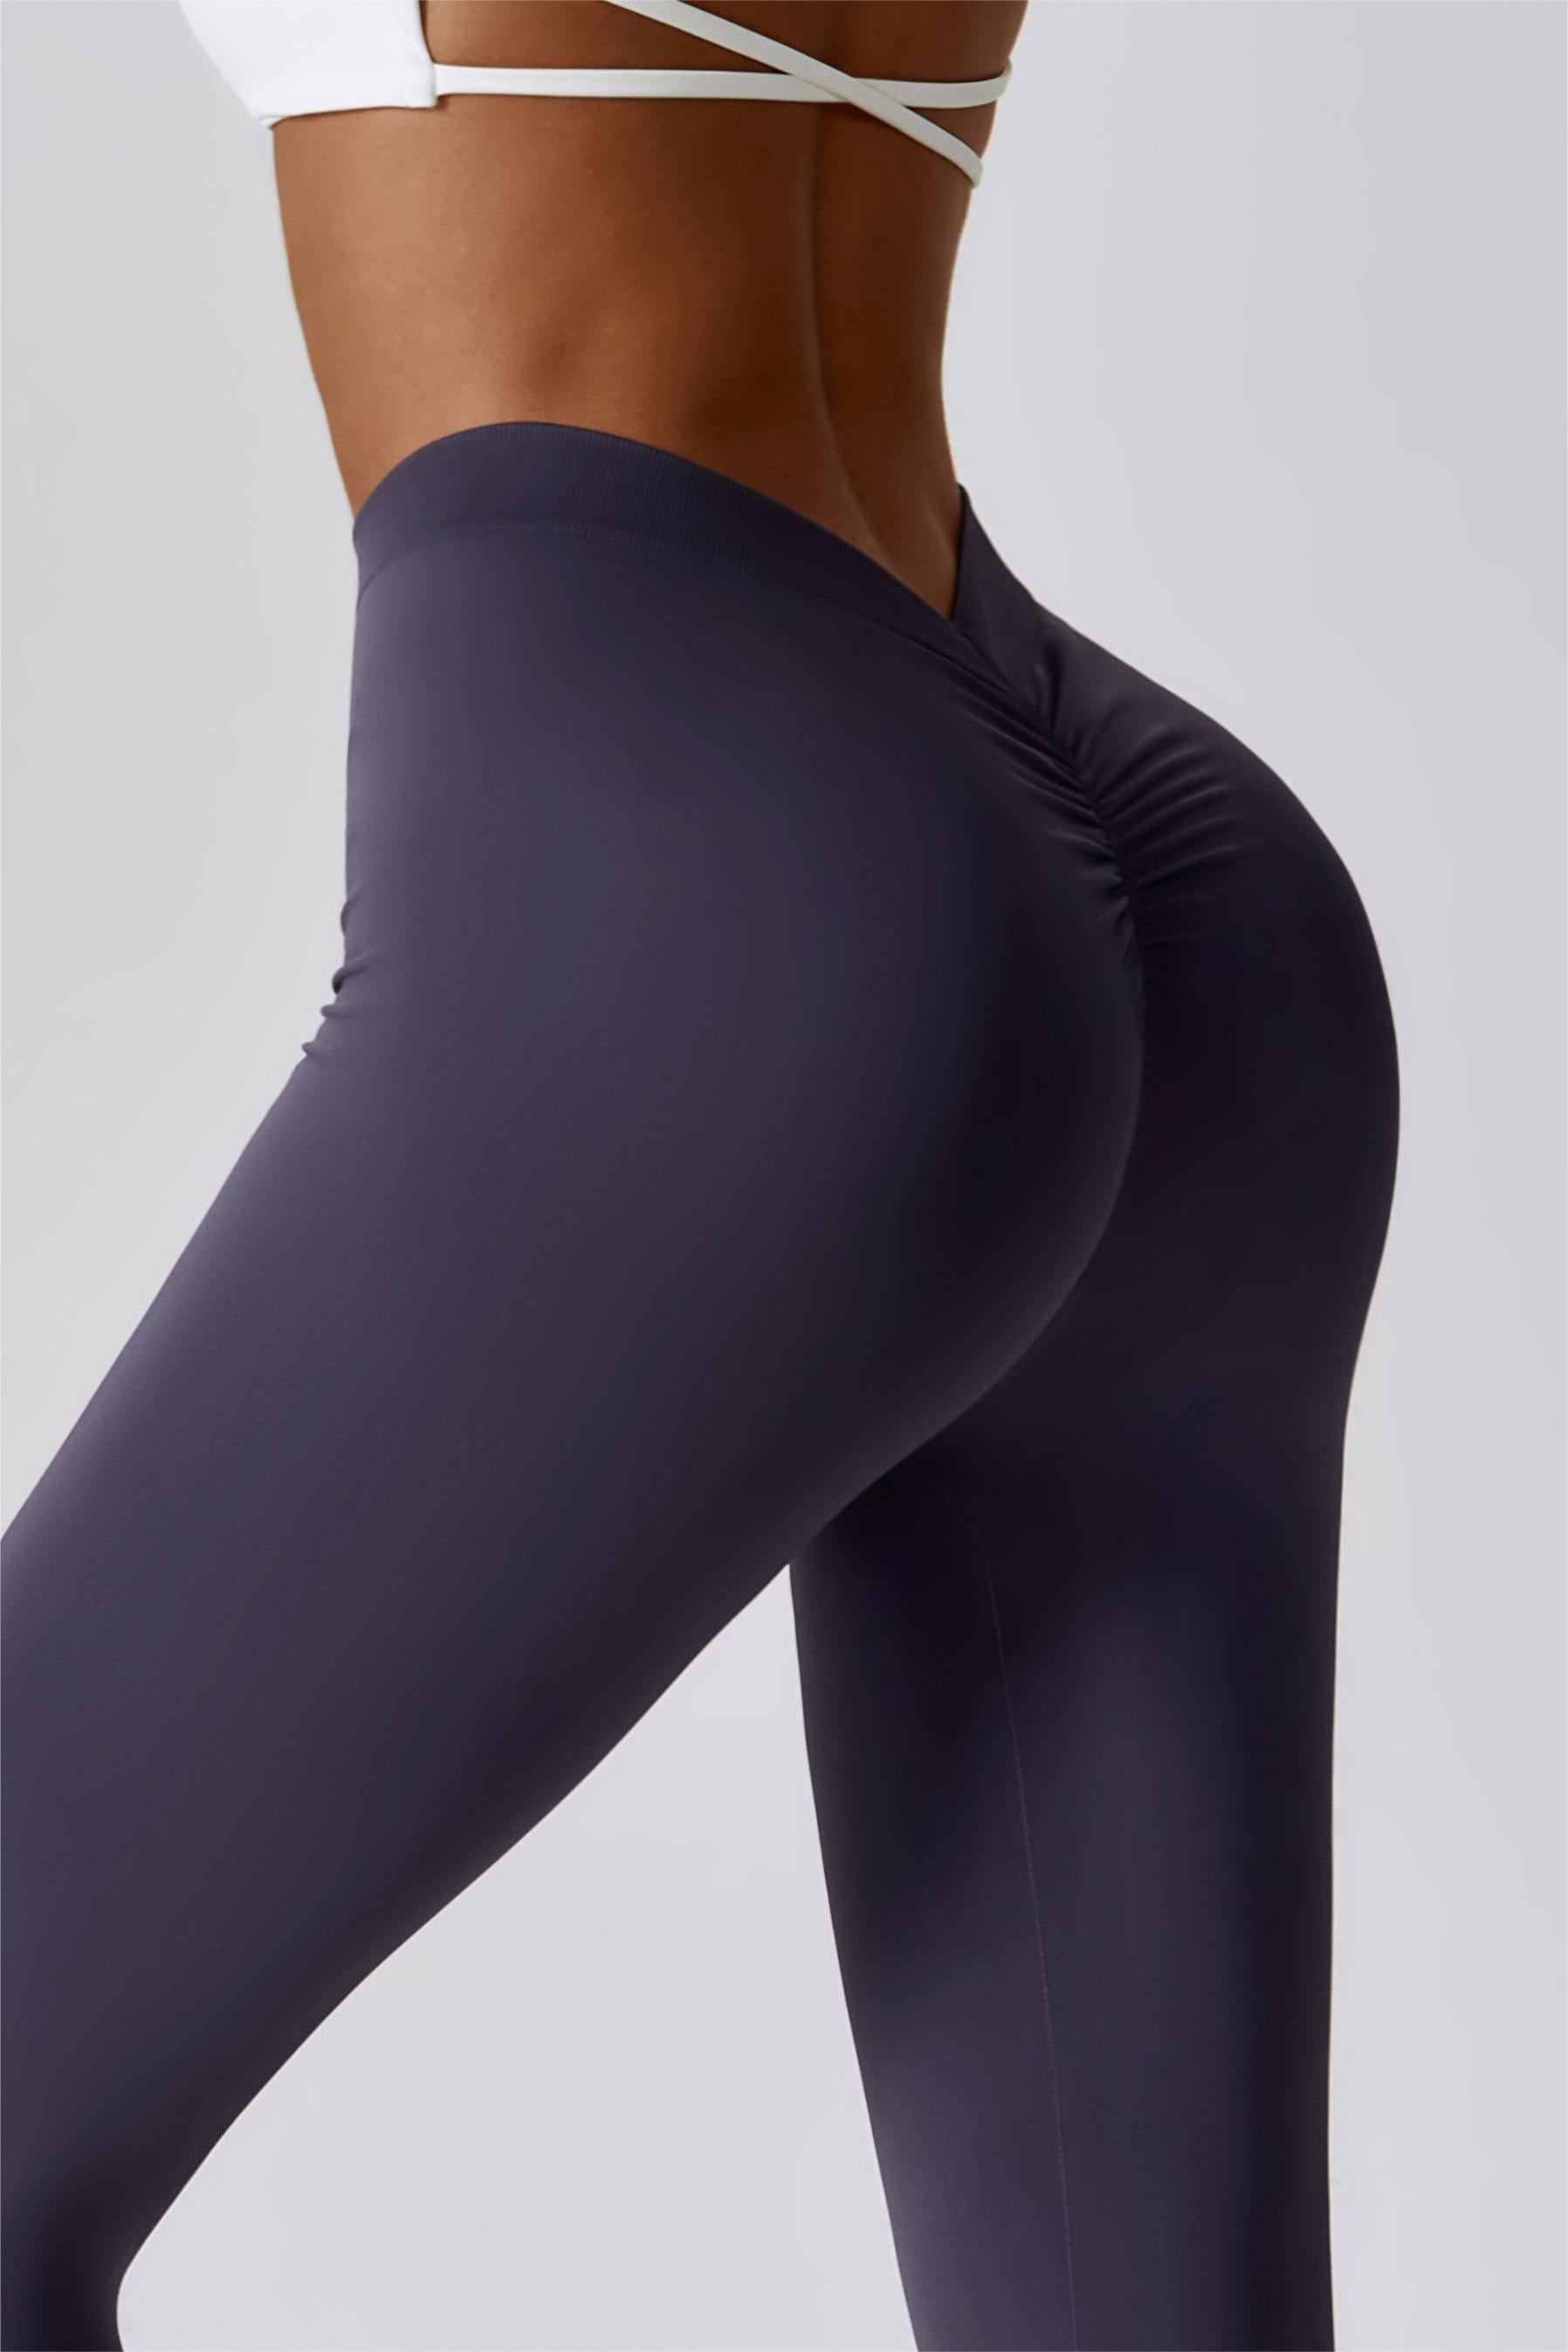 V-Back Seamless High Waist Scrunch Butt Leggings For Women – Zioccie